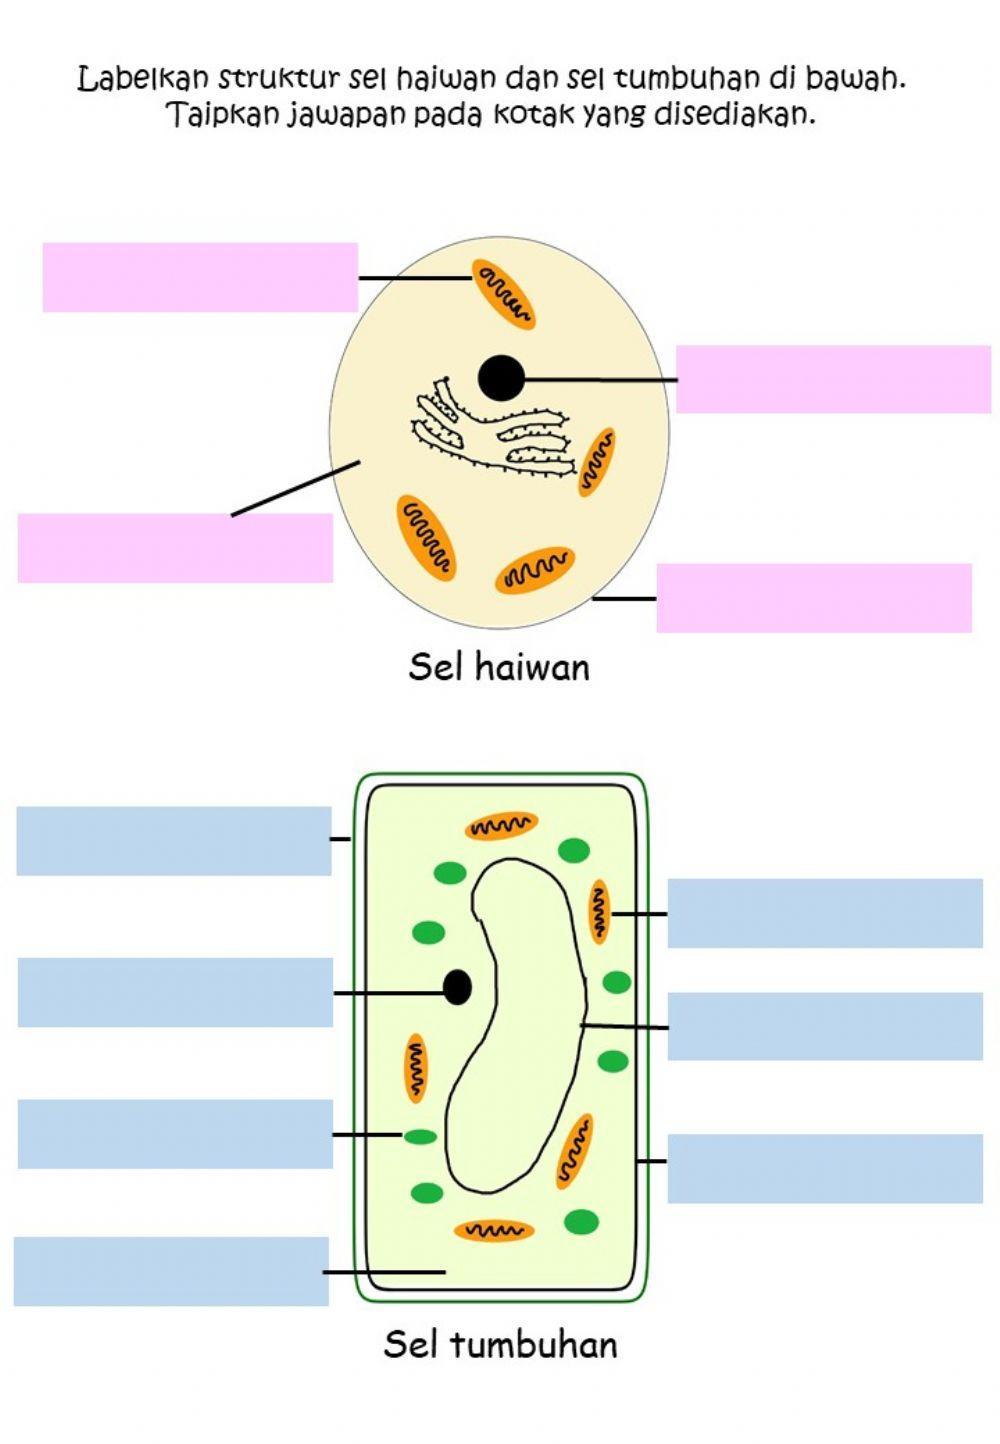 Struktur sel haiwan dan Sel tumbuhan